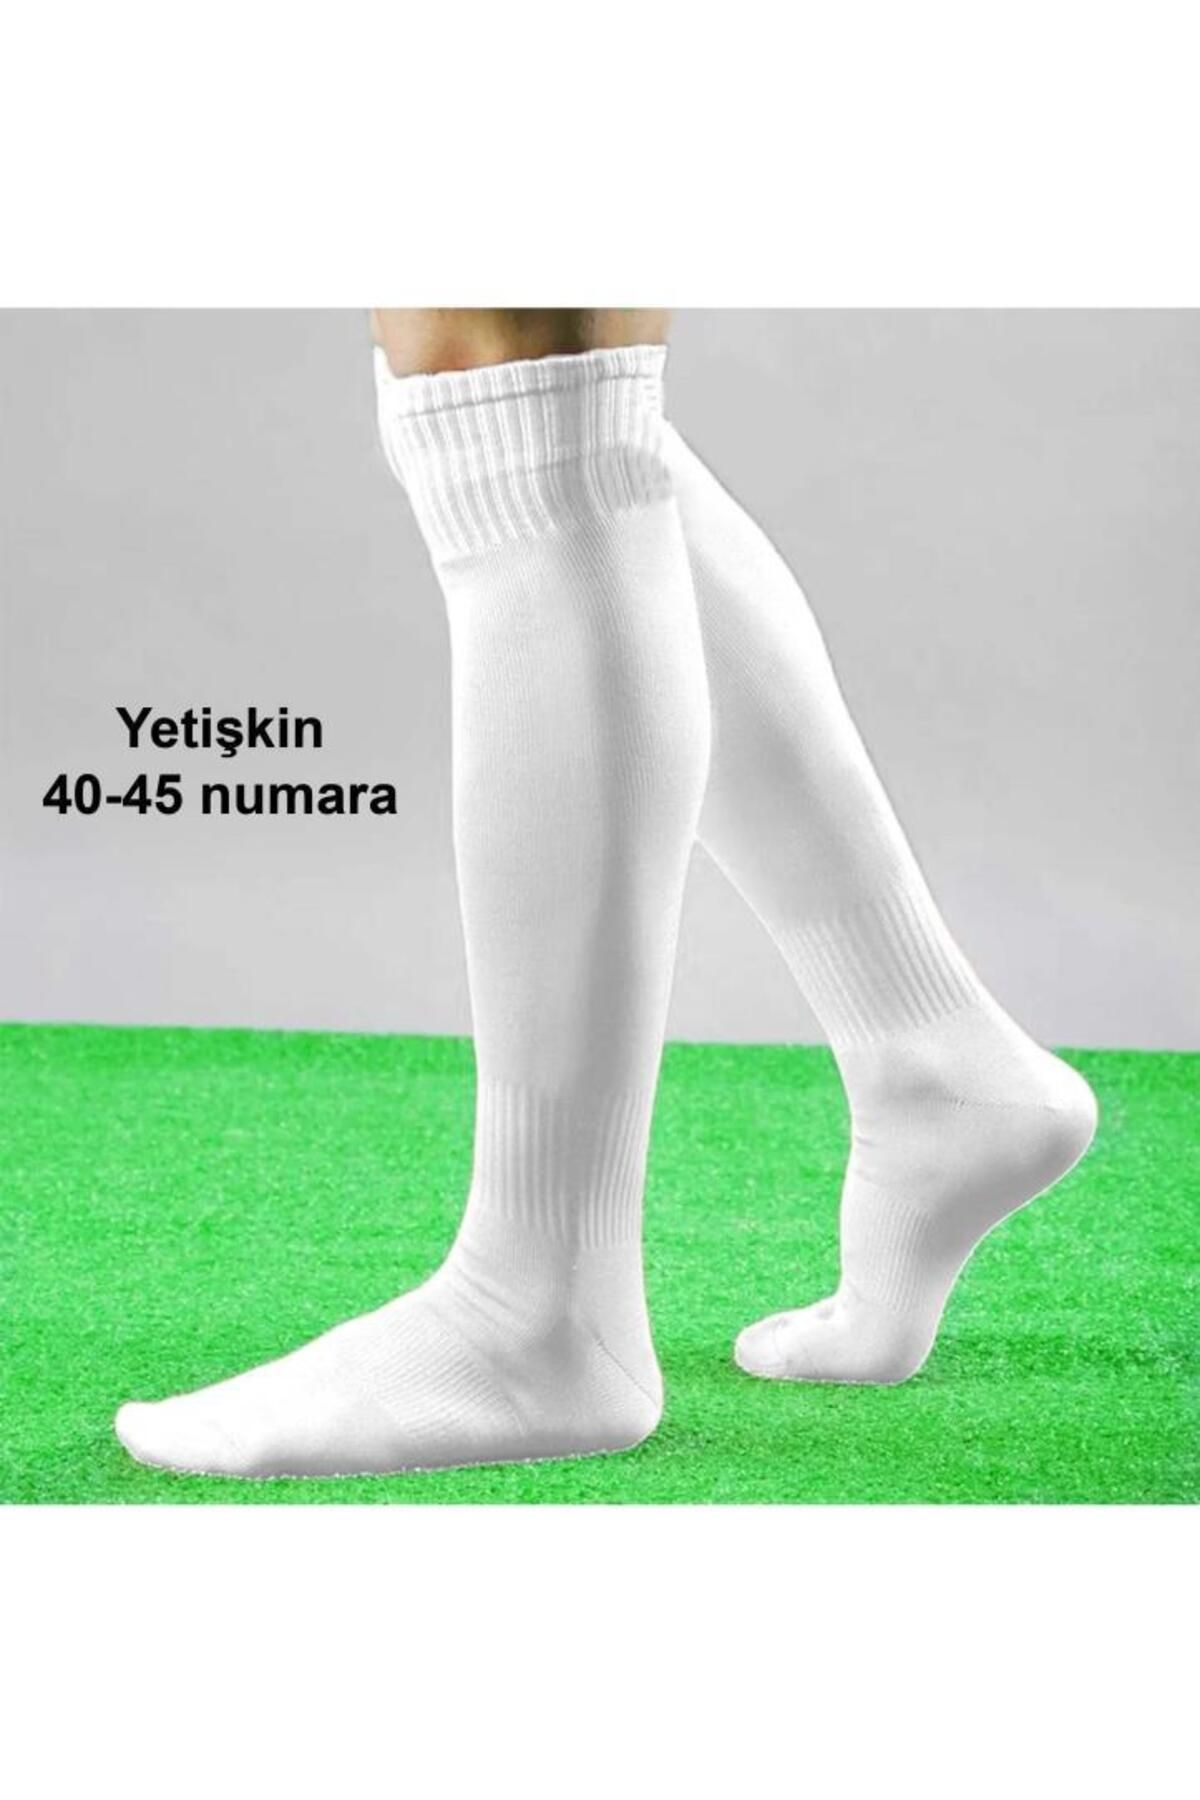 Liggo Yetişkin Futbol Maç Çorabı Futbol Tozluk Futbol Halısaha Çorabı Konç 40-45